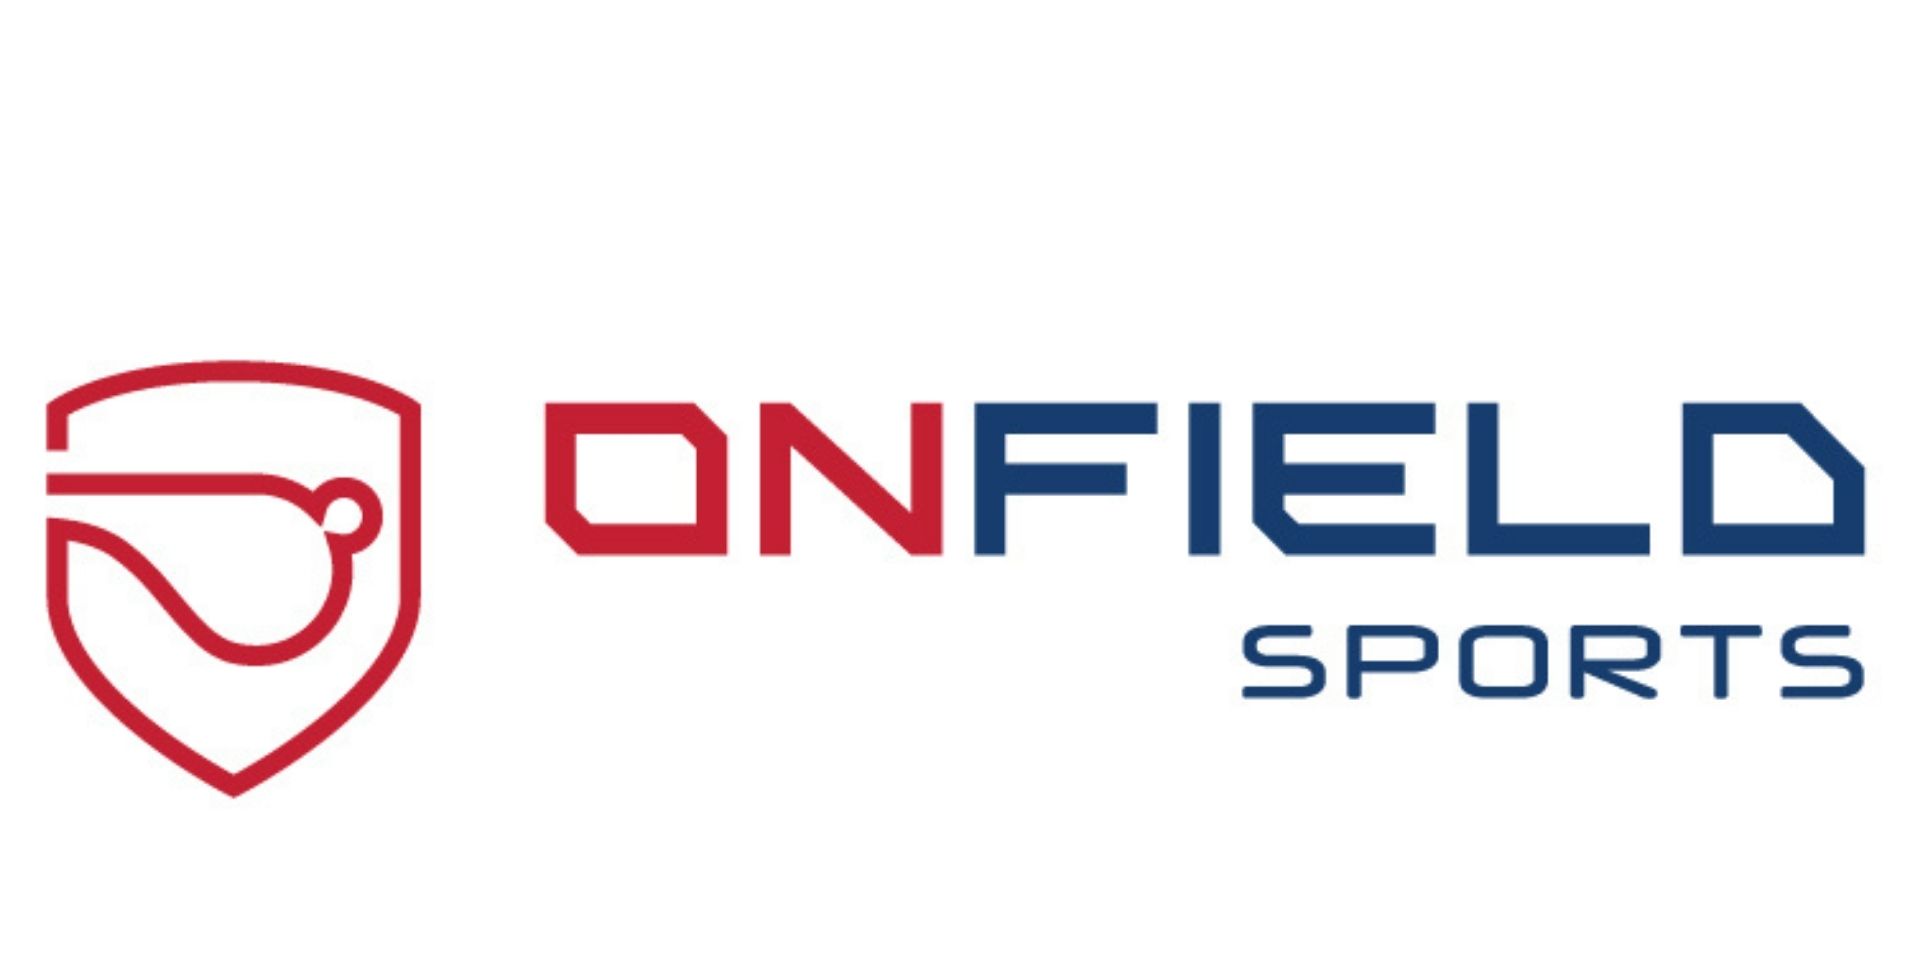 ONFIELD SPORTS - Winning Mind Sports